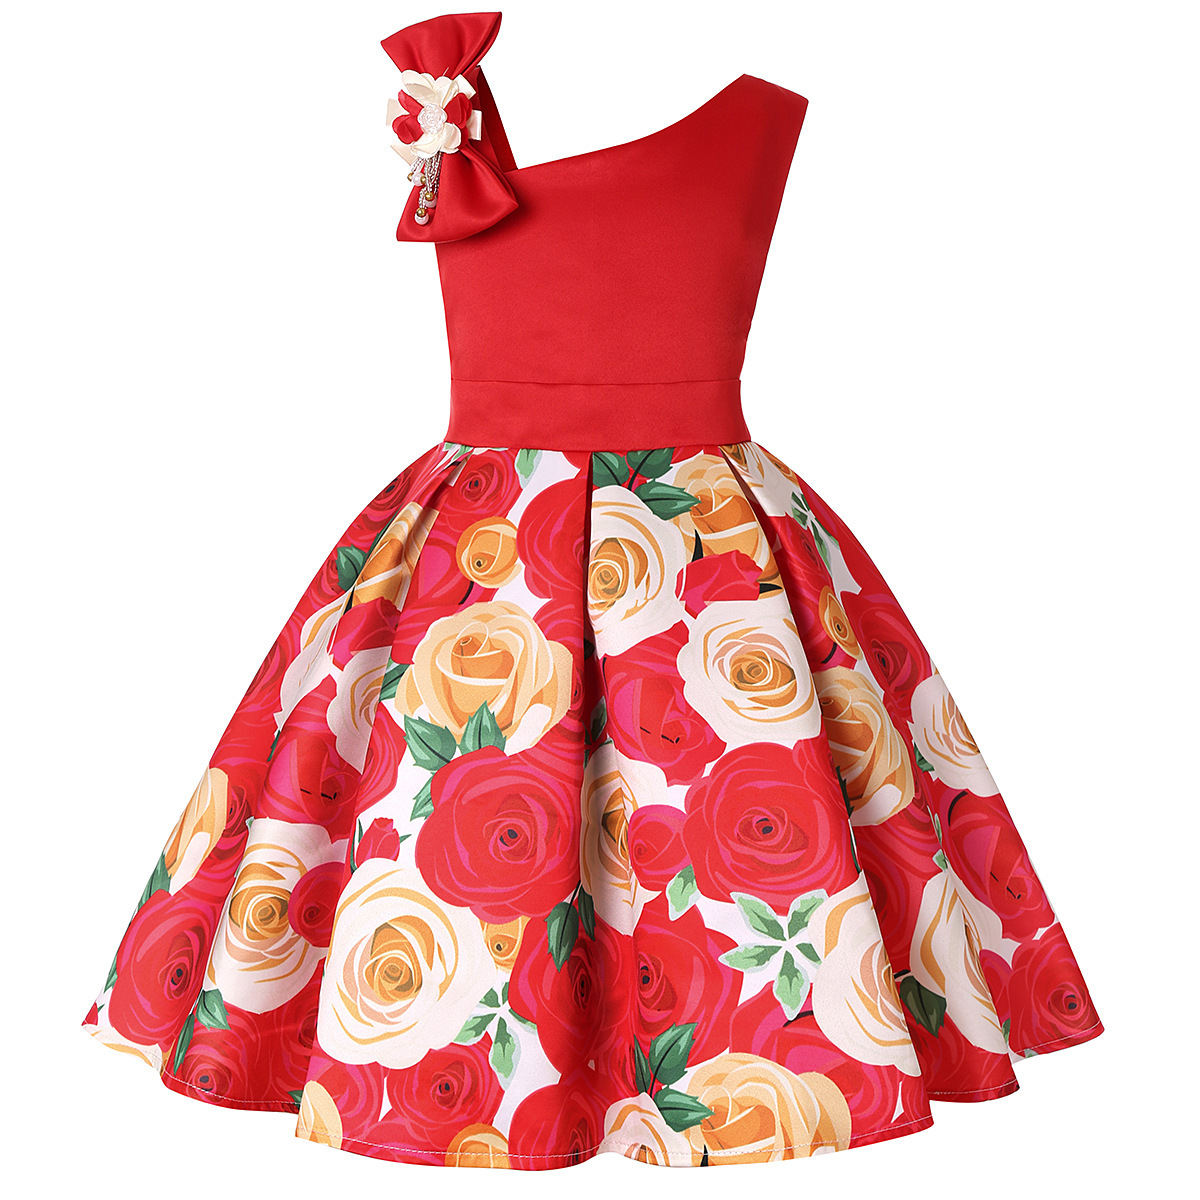 Digital Flower Print Children's Dresses